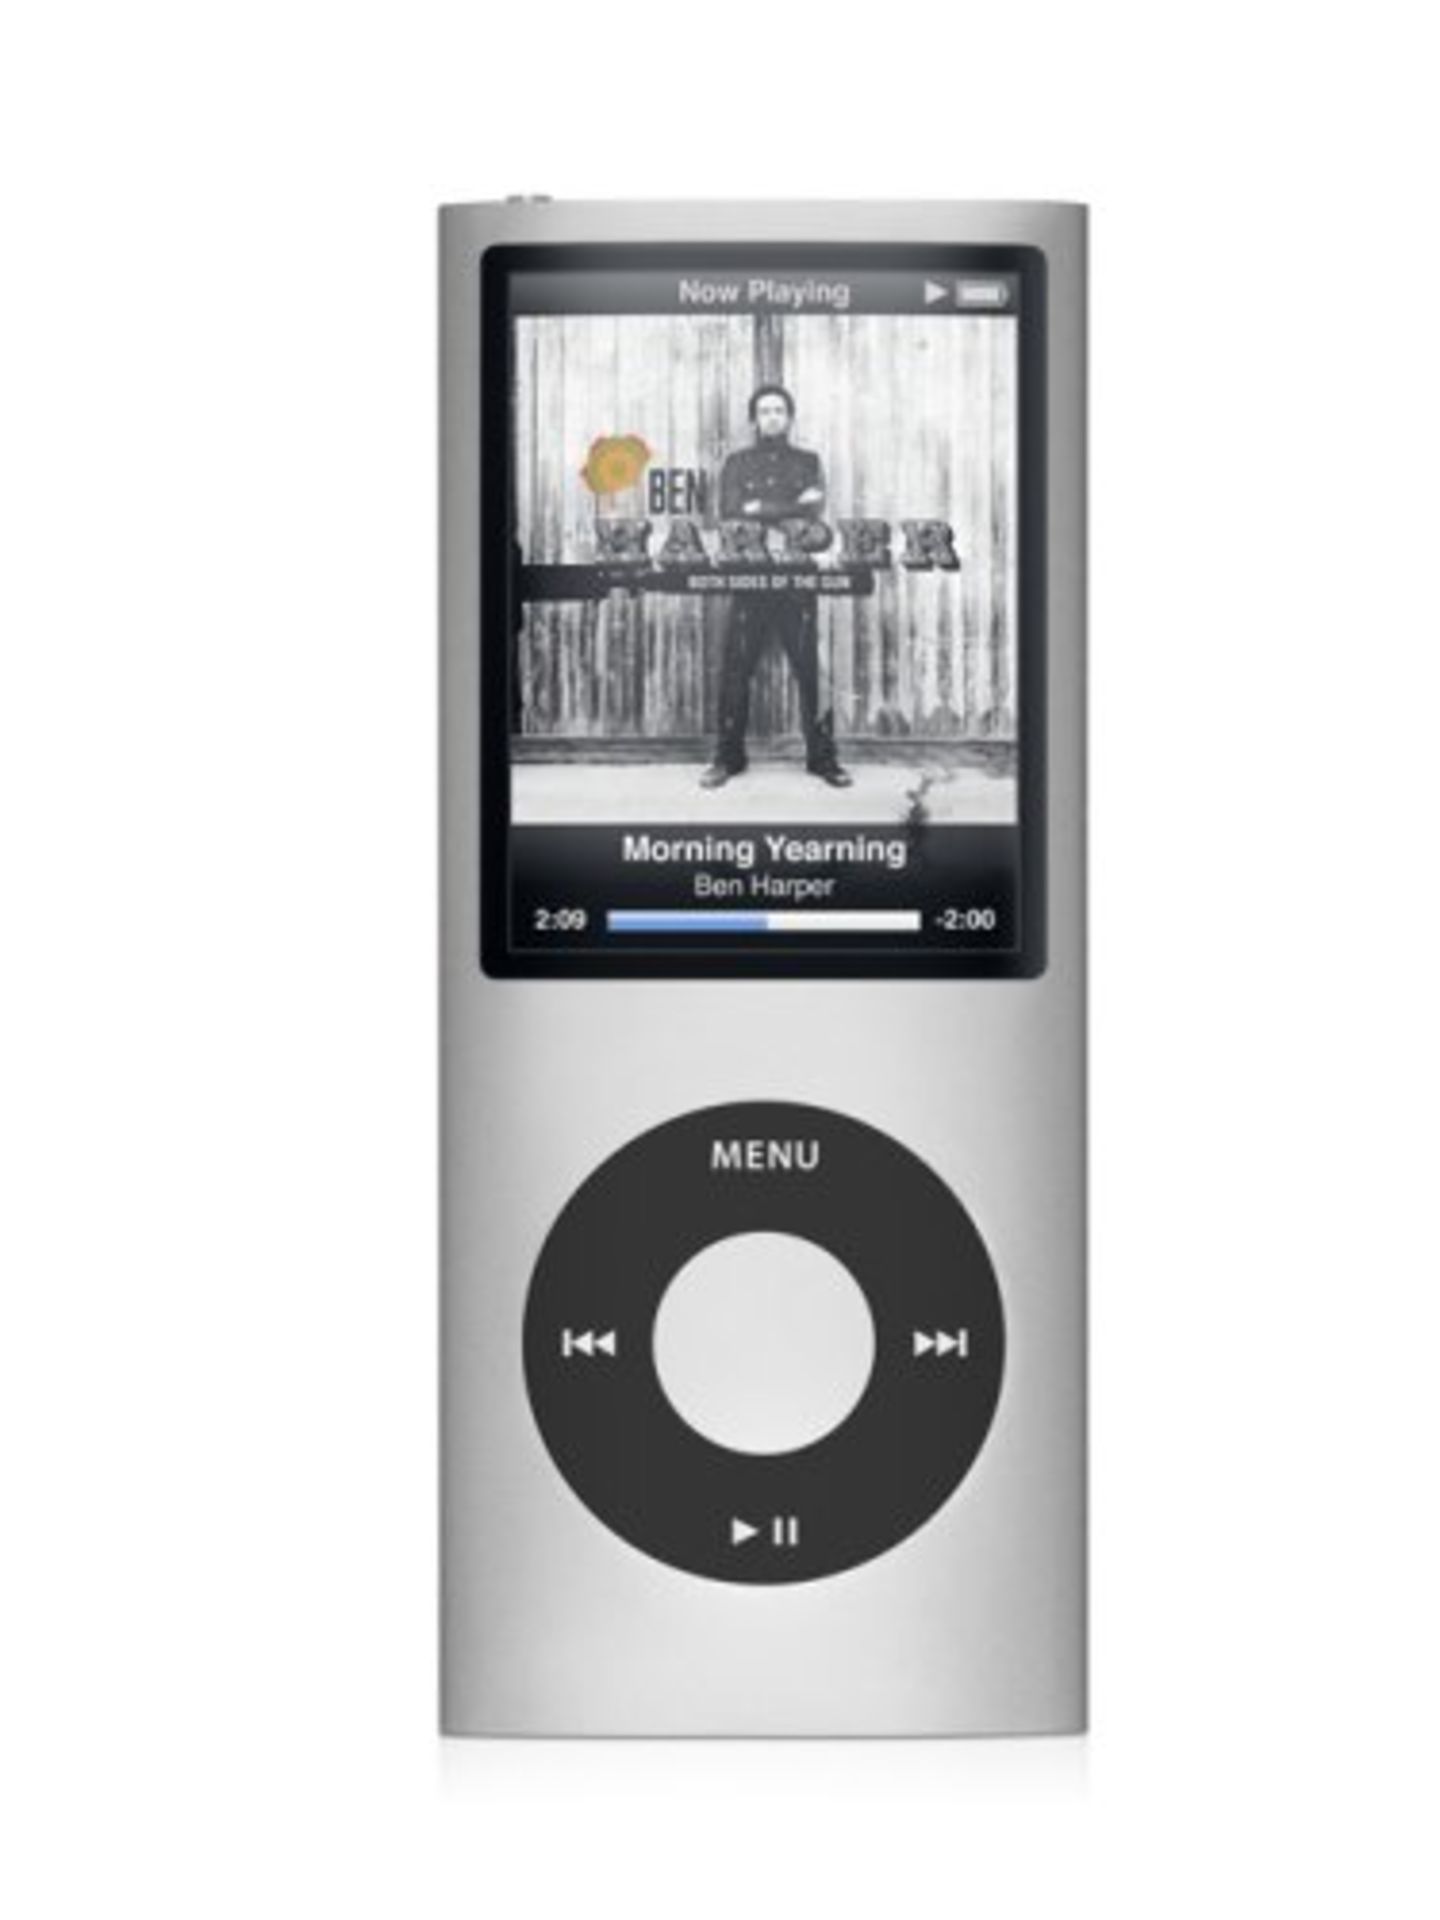 Apple iPod nano 8GB  - Silver - 4th Generation